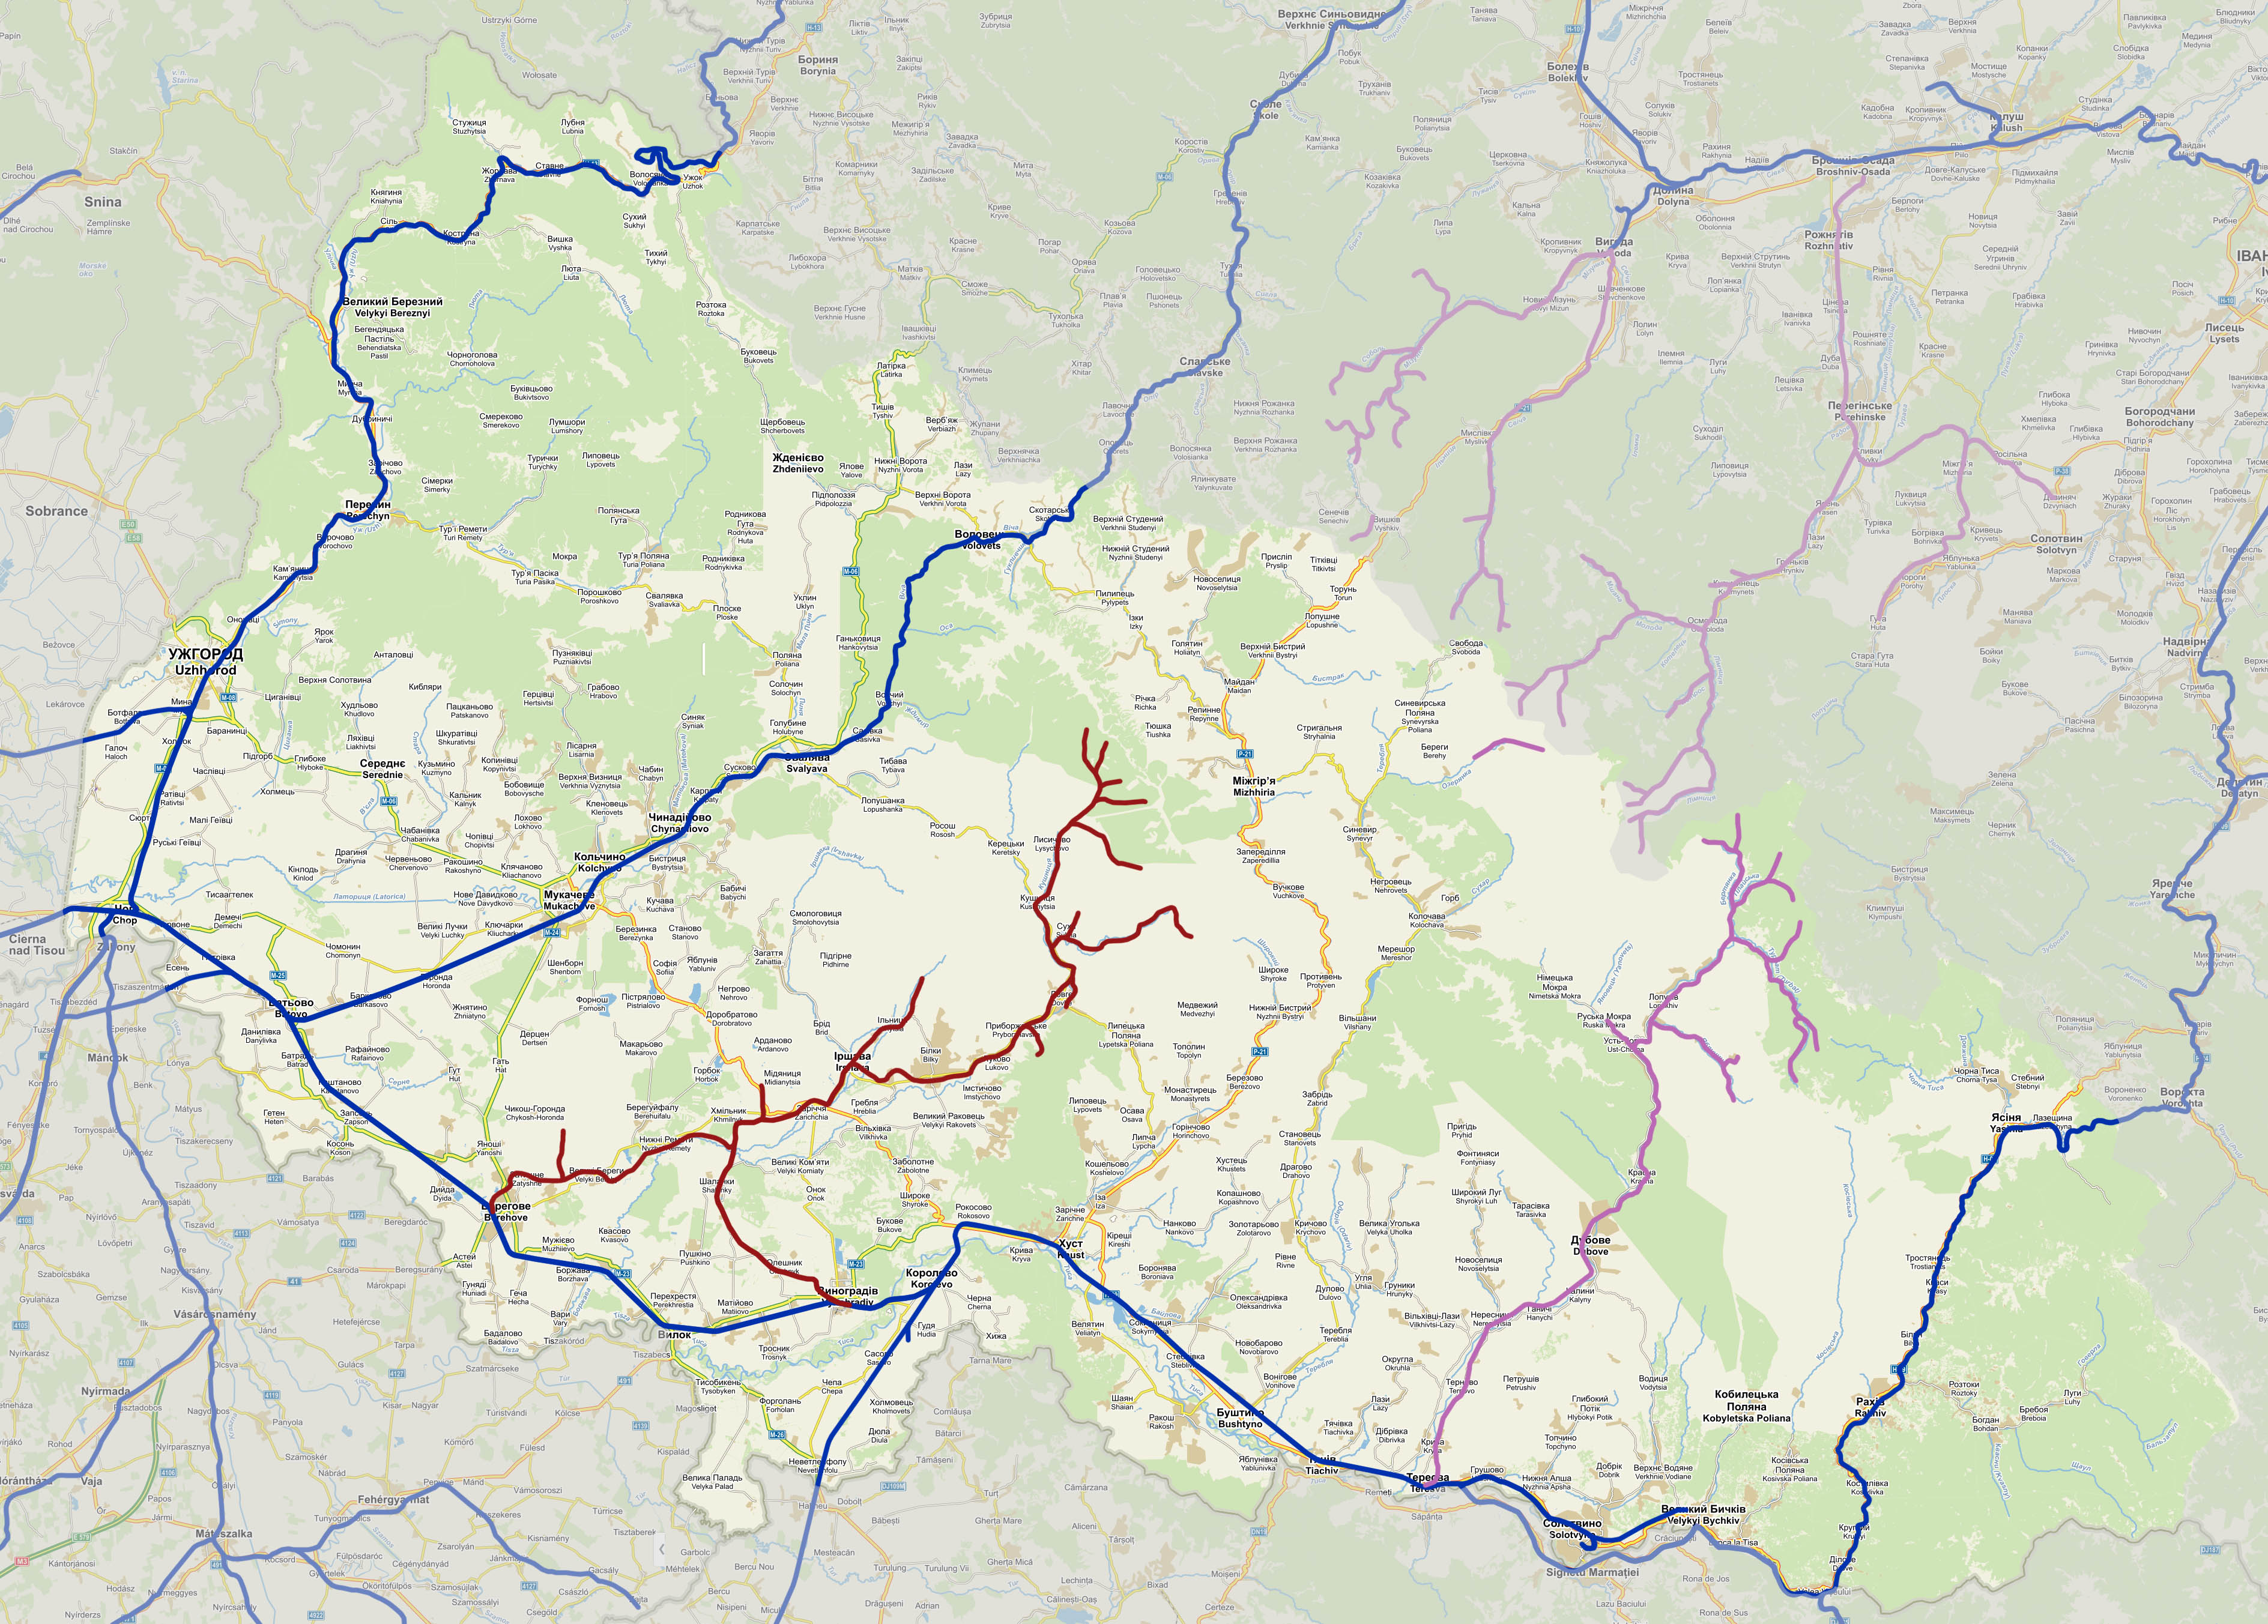 Světle vyznačené území Zakarpatí s modře zakreslenými normálně- a širokorozchodnými železnicemi. Fialově jsou zakresleny úzkokolejky kromě Boržavské dráhy a červeně je vyznačena Boržavské železnice ve svém maximálním rozšíření (všechny historické odbočky).